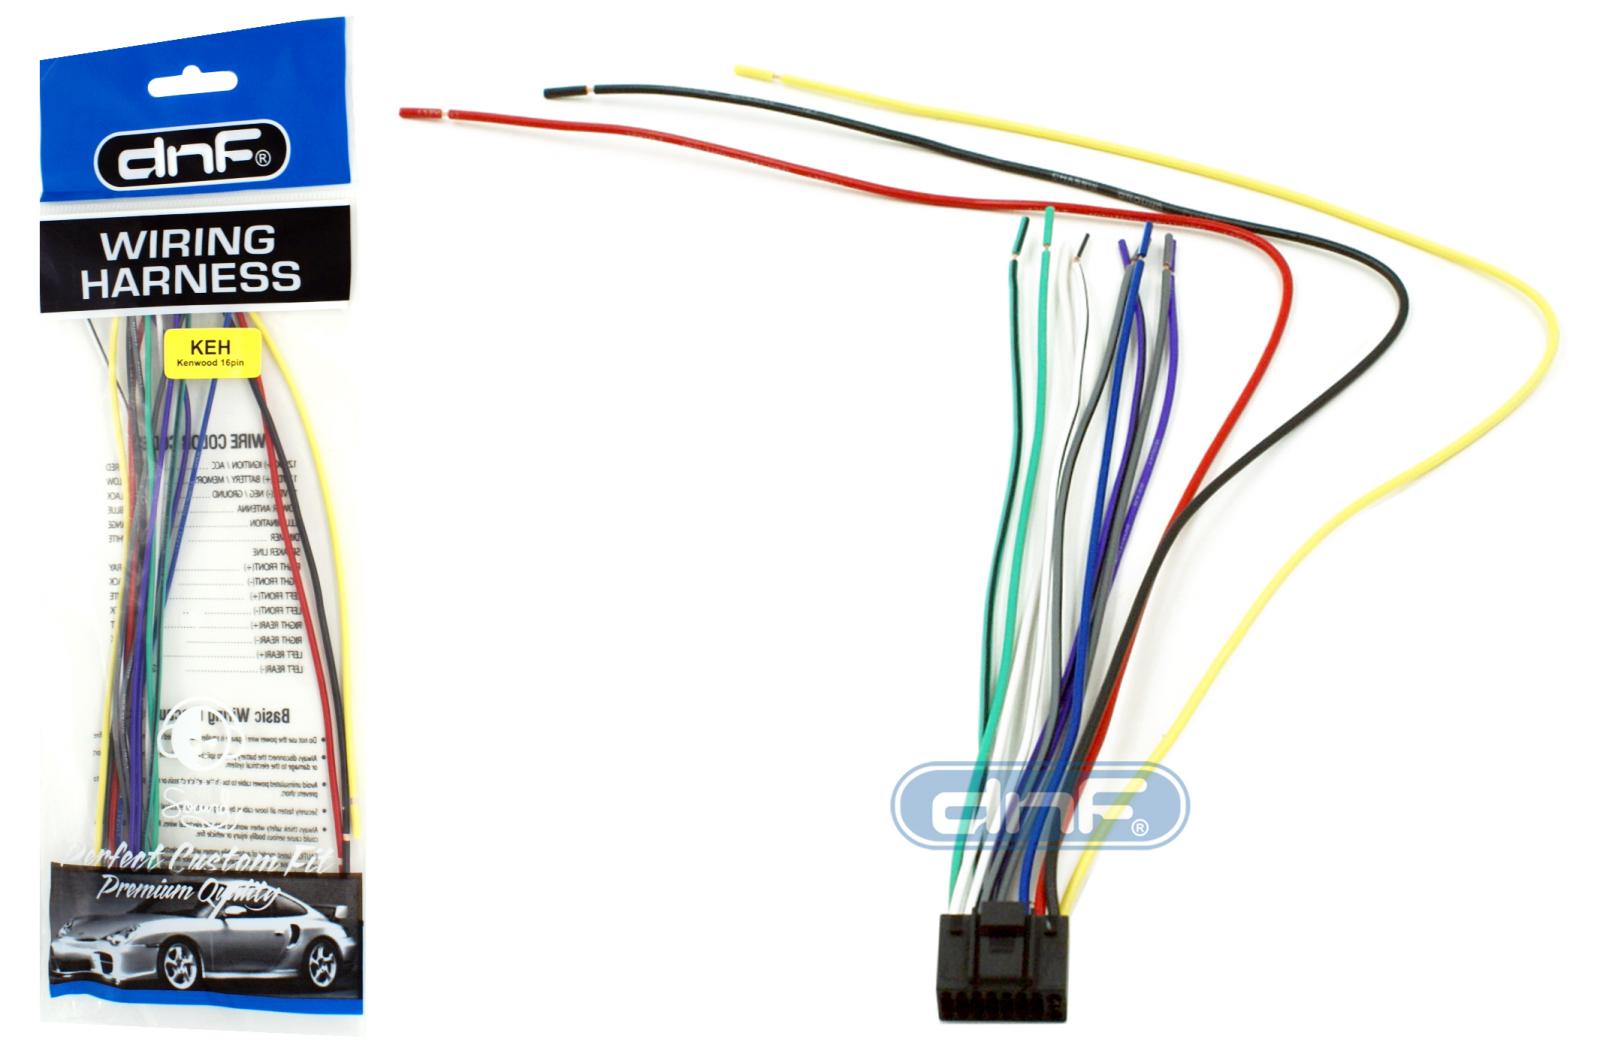 kenwood kdc-mp245 wiring diagram